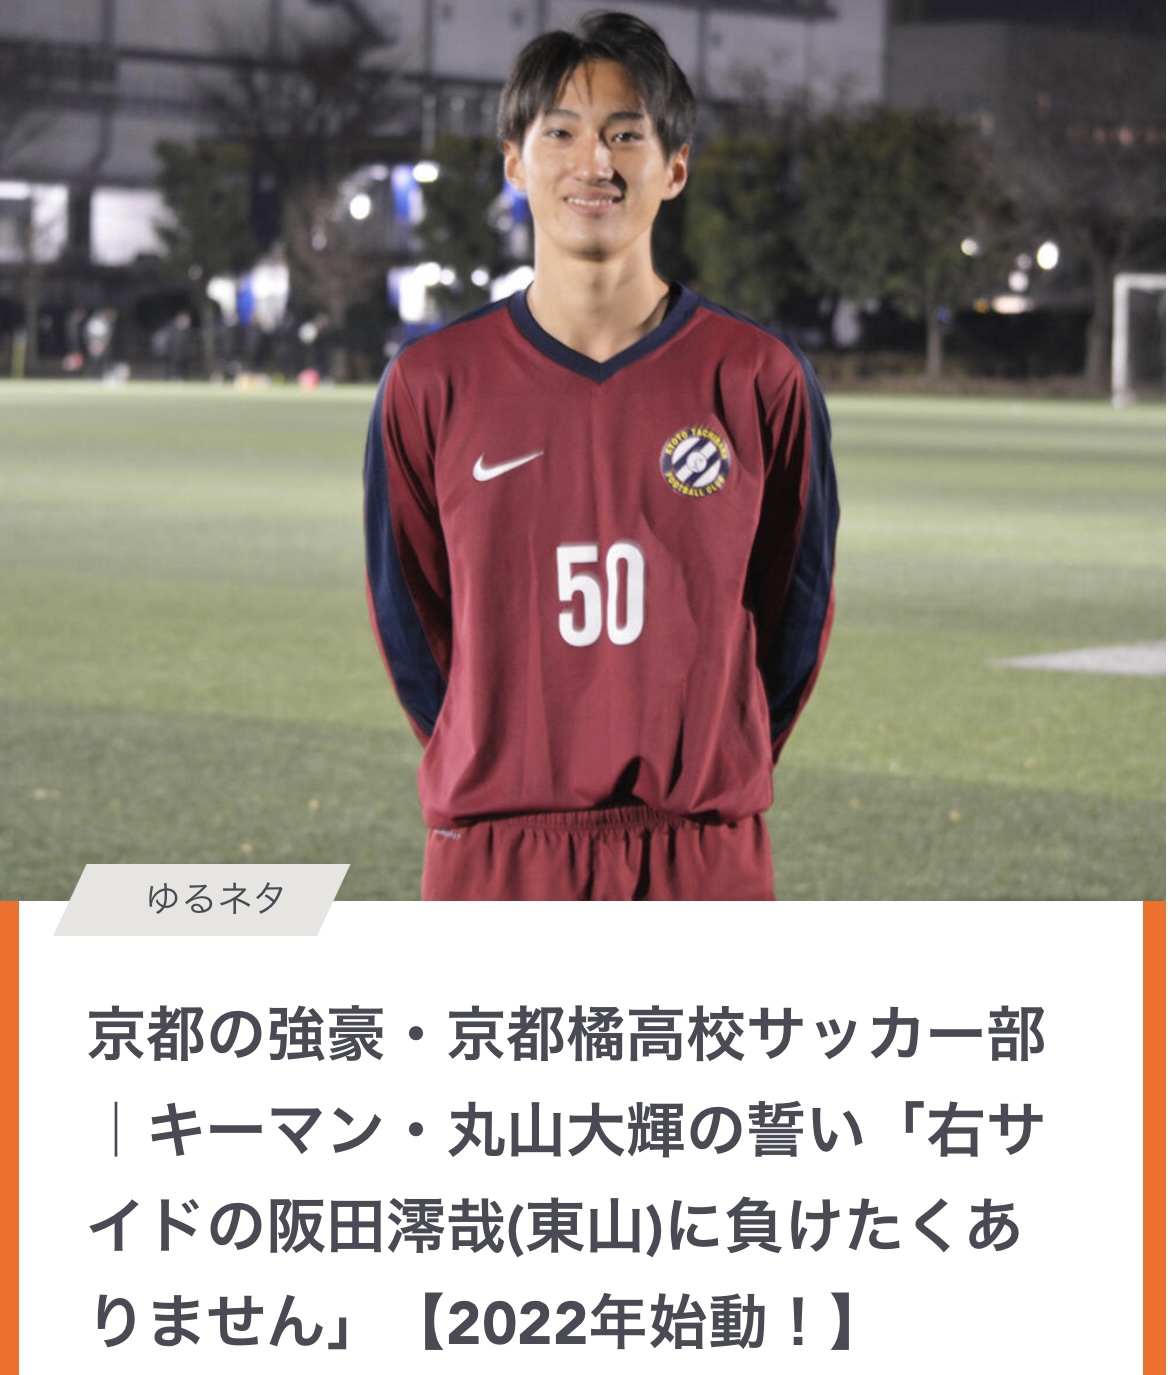 丸山大輝選手の活躍が掲載されました ヤンサカ 京都橘高校サッカー部 Official Web Site